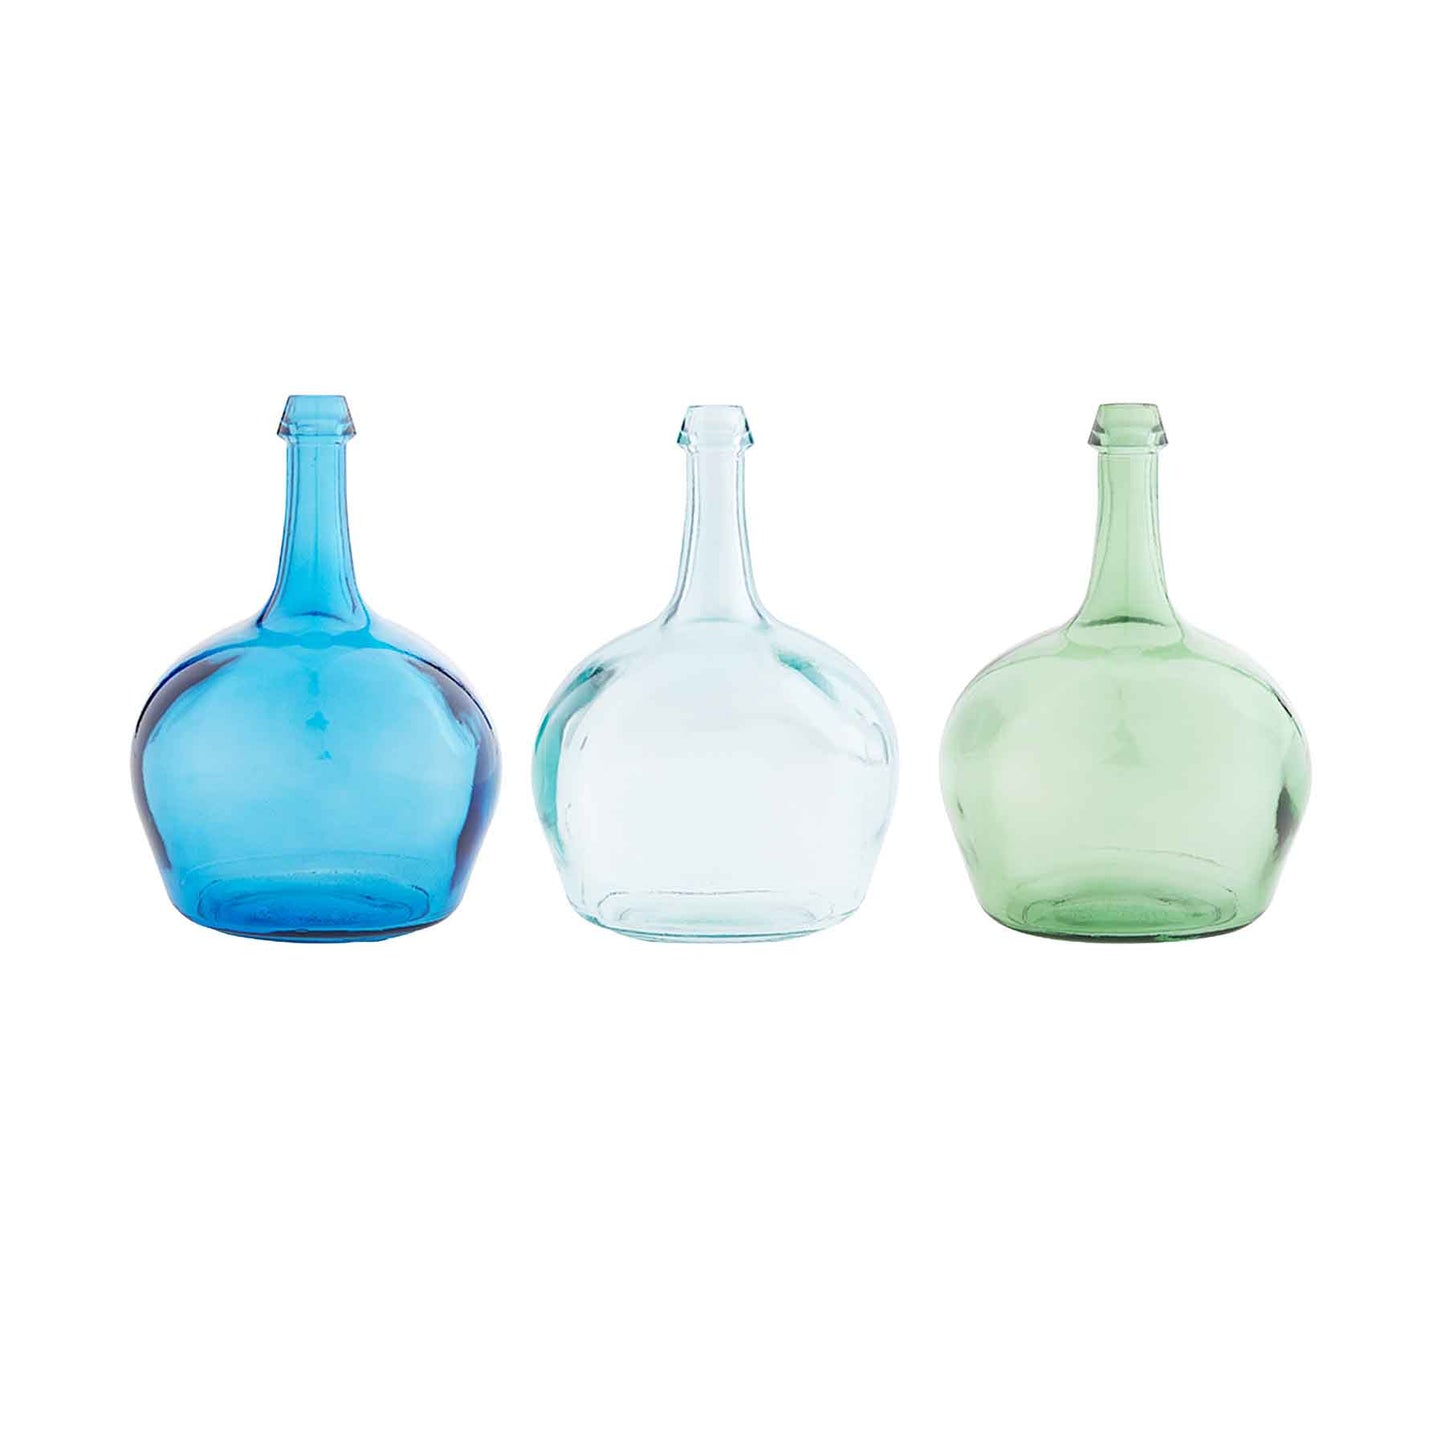 BOTTLENECK GLASS VASES - Blue